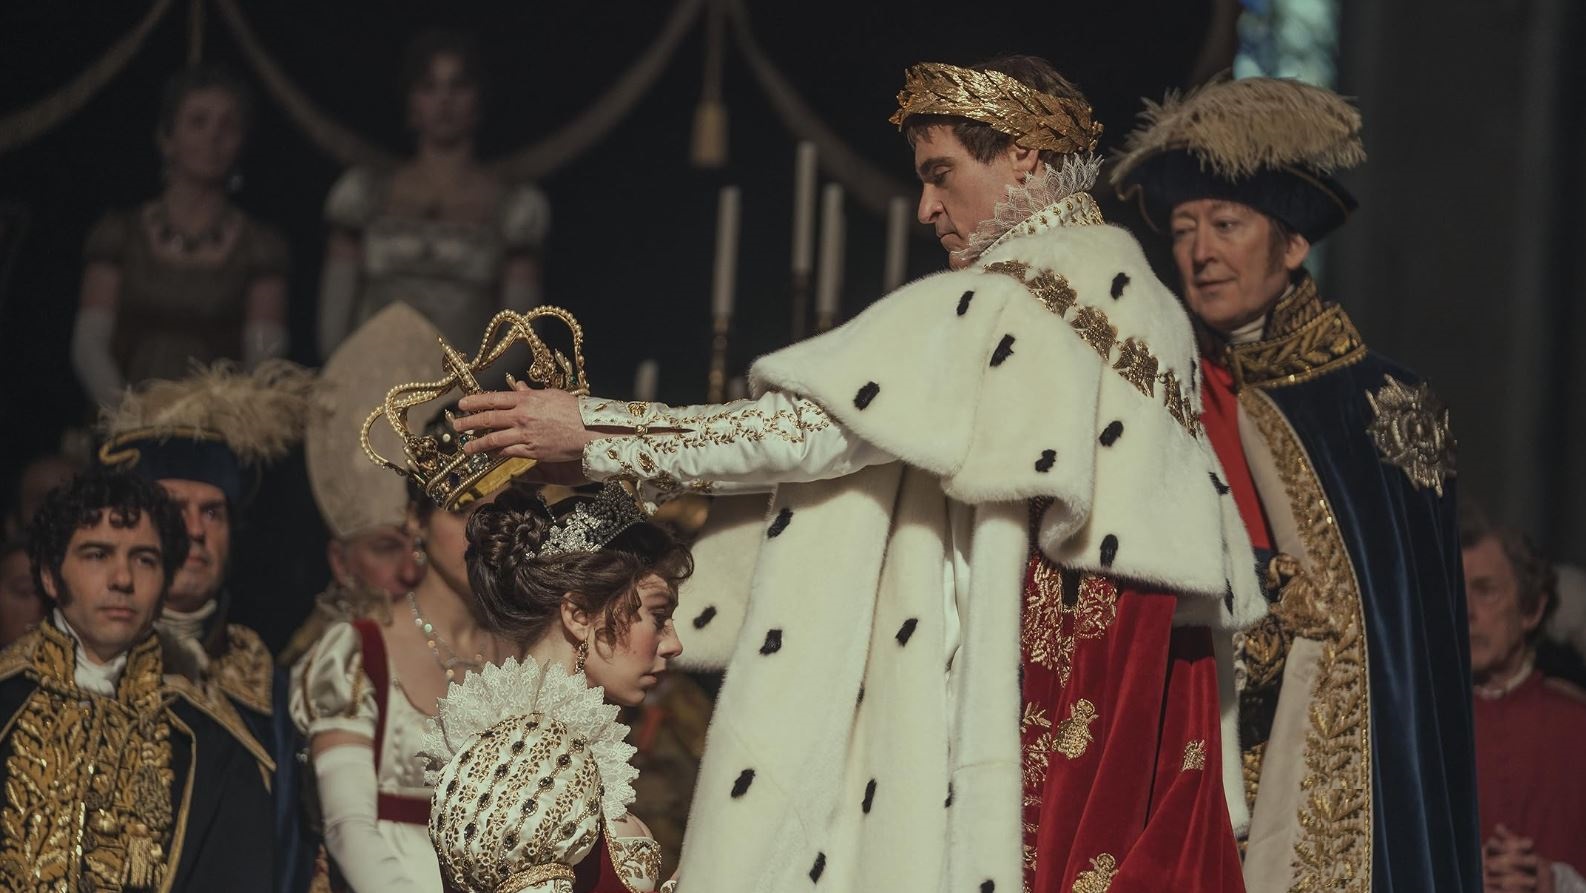 Σκηνή από την ταινία του Ρίντλεϊ Σκοτ «Ναπολέων» με τον Χοακίν Φίνιξ στον ρόλο, ενώ στέφει αυτοκράτειρα την Ιωσηφίνα 